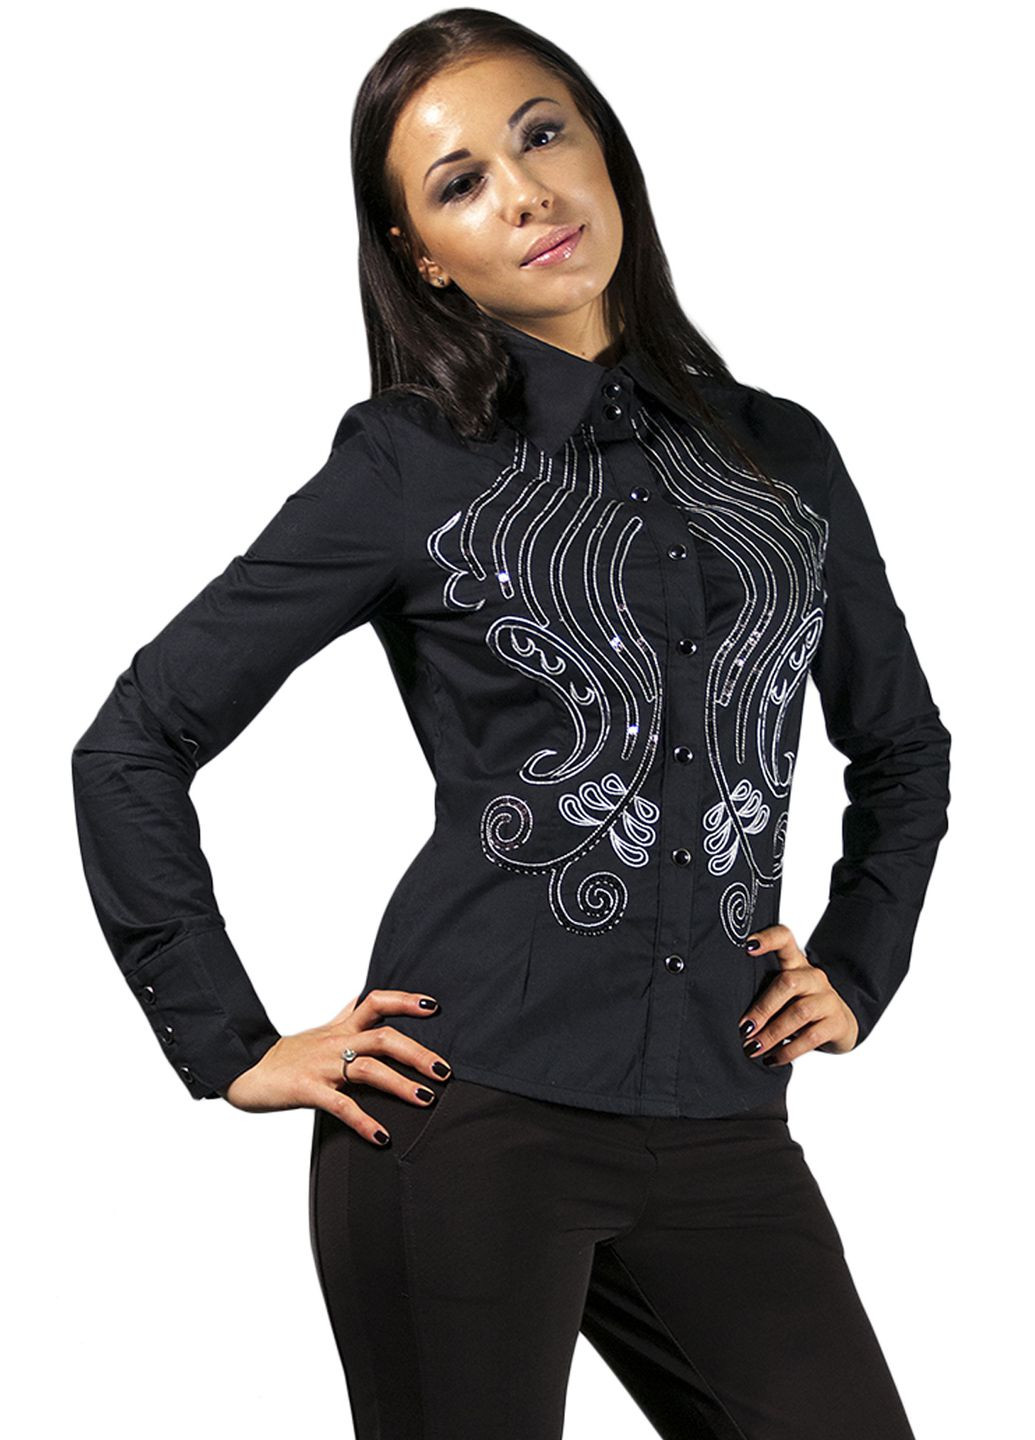 Черная демисезонная женская черная блуза с орнаментом we-01213 черный Forza Viva